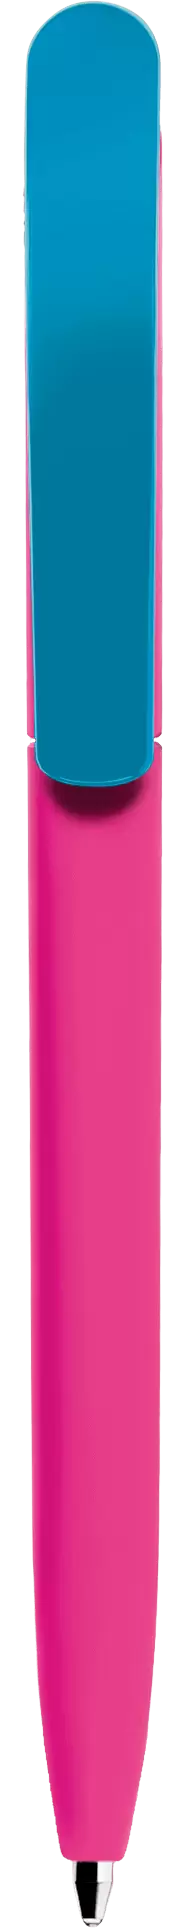 Ручка VIVALDI SOFT MIX Розовая с голубым 1333-10-12